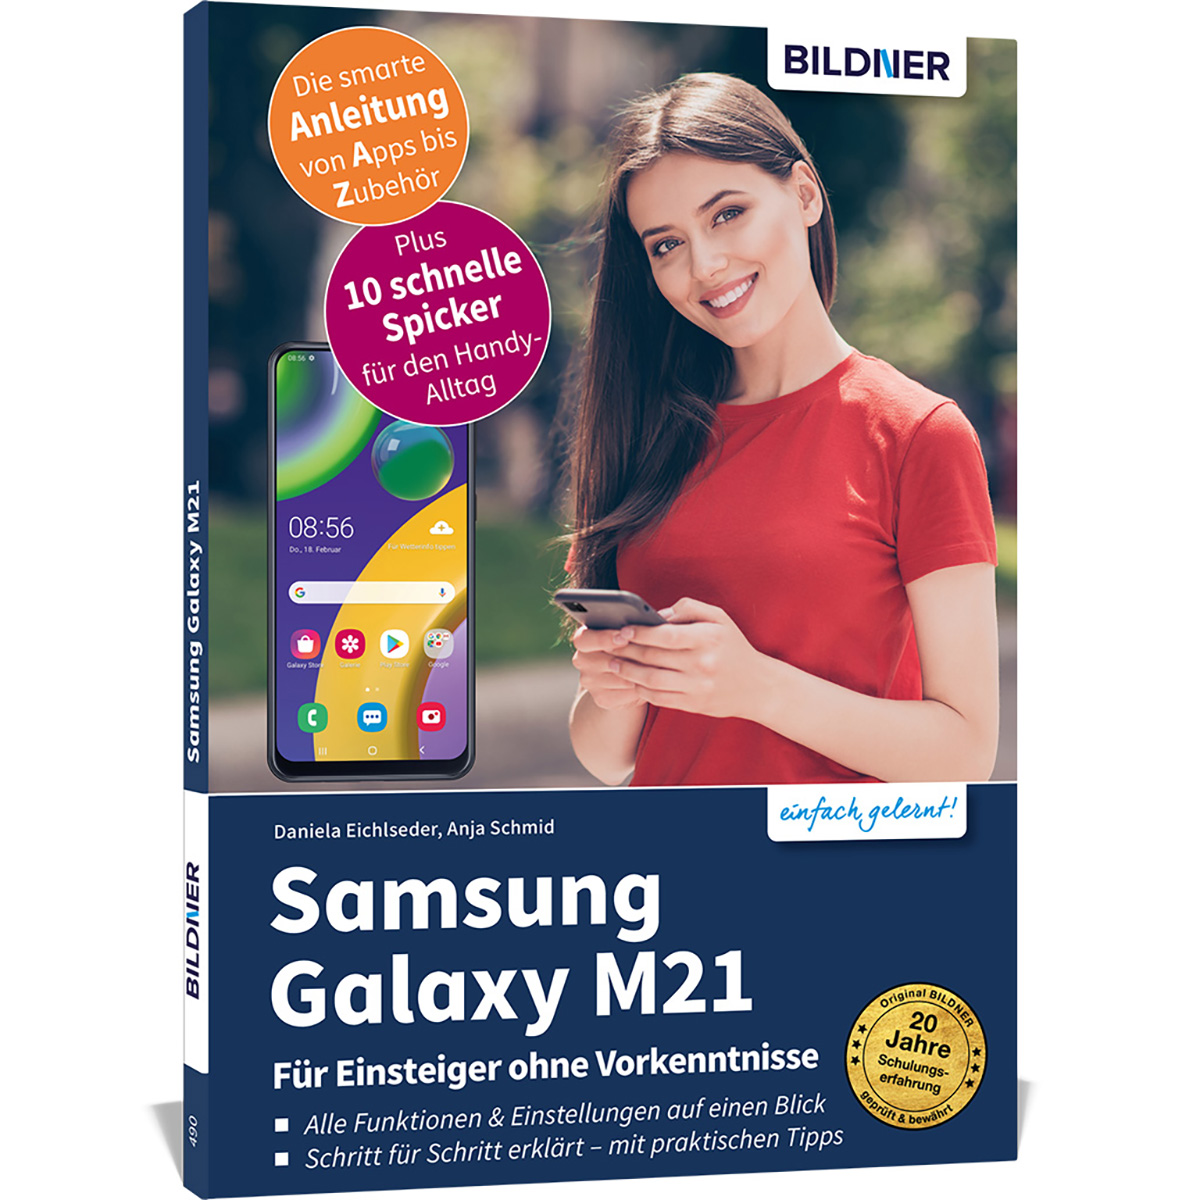 Samsung Galaxy M21 ohne - Vorkenntnisse Einsteiger Für